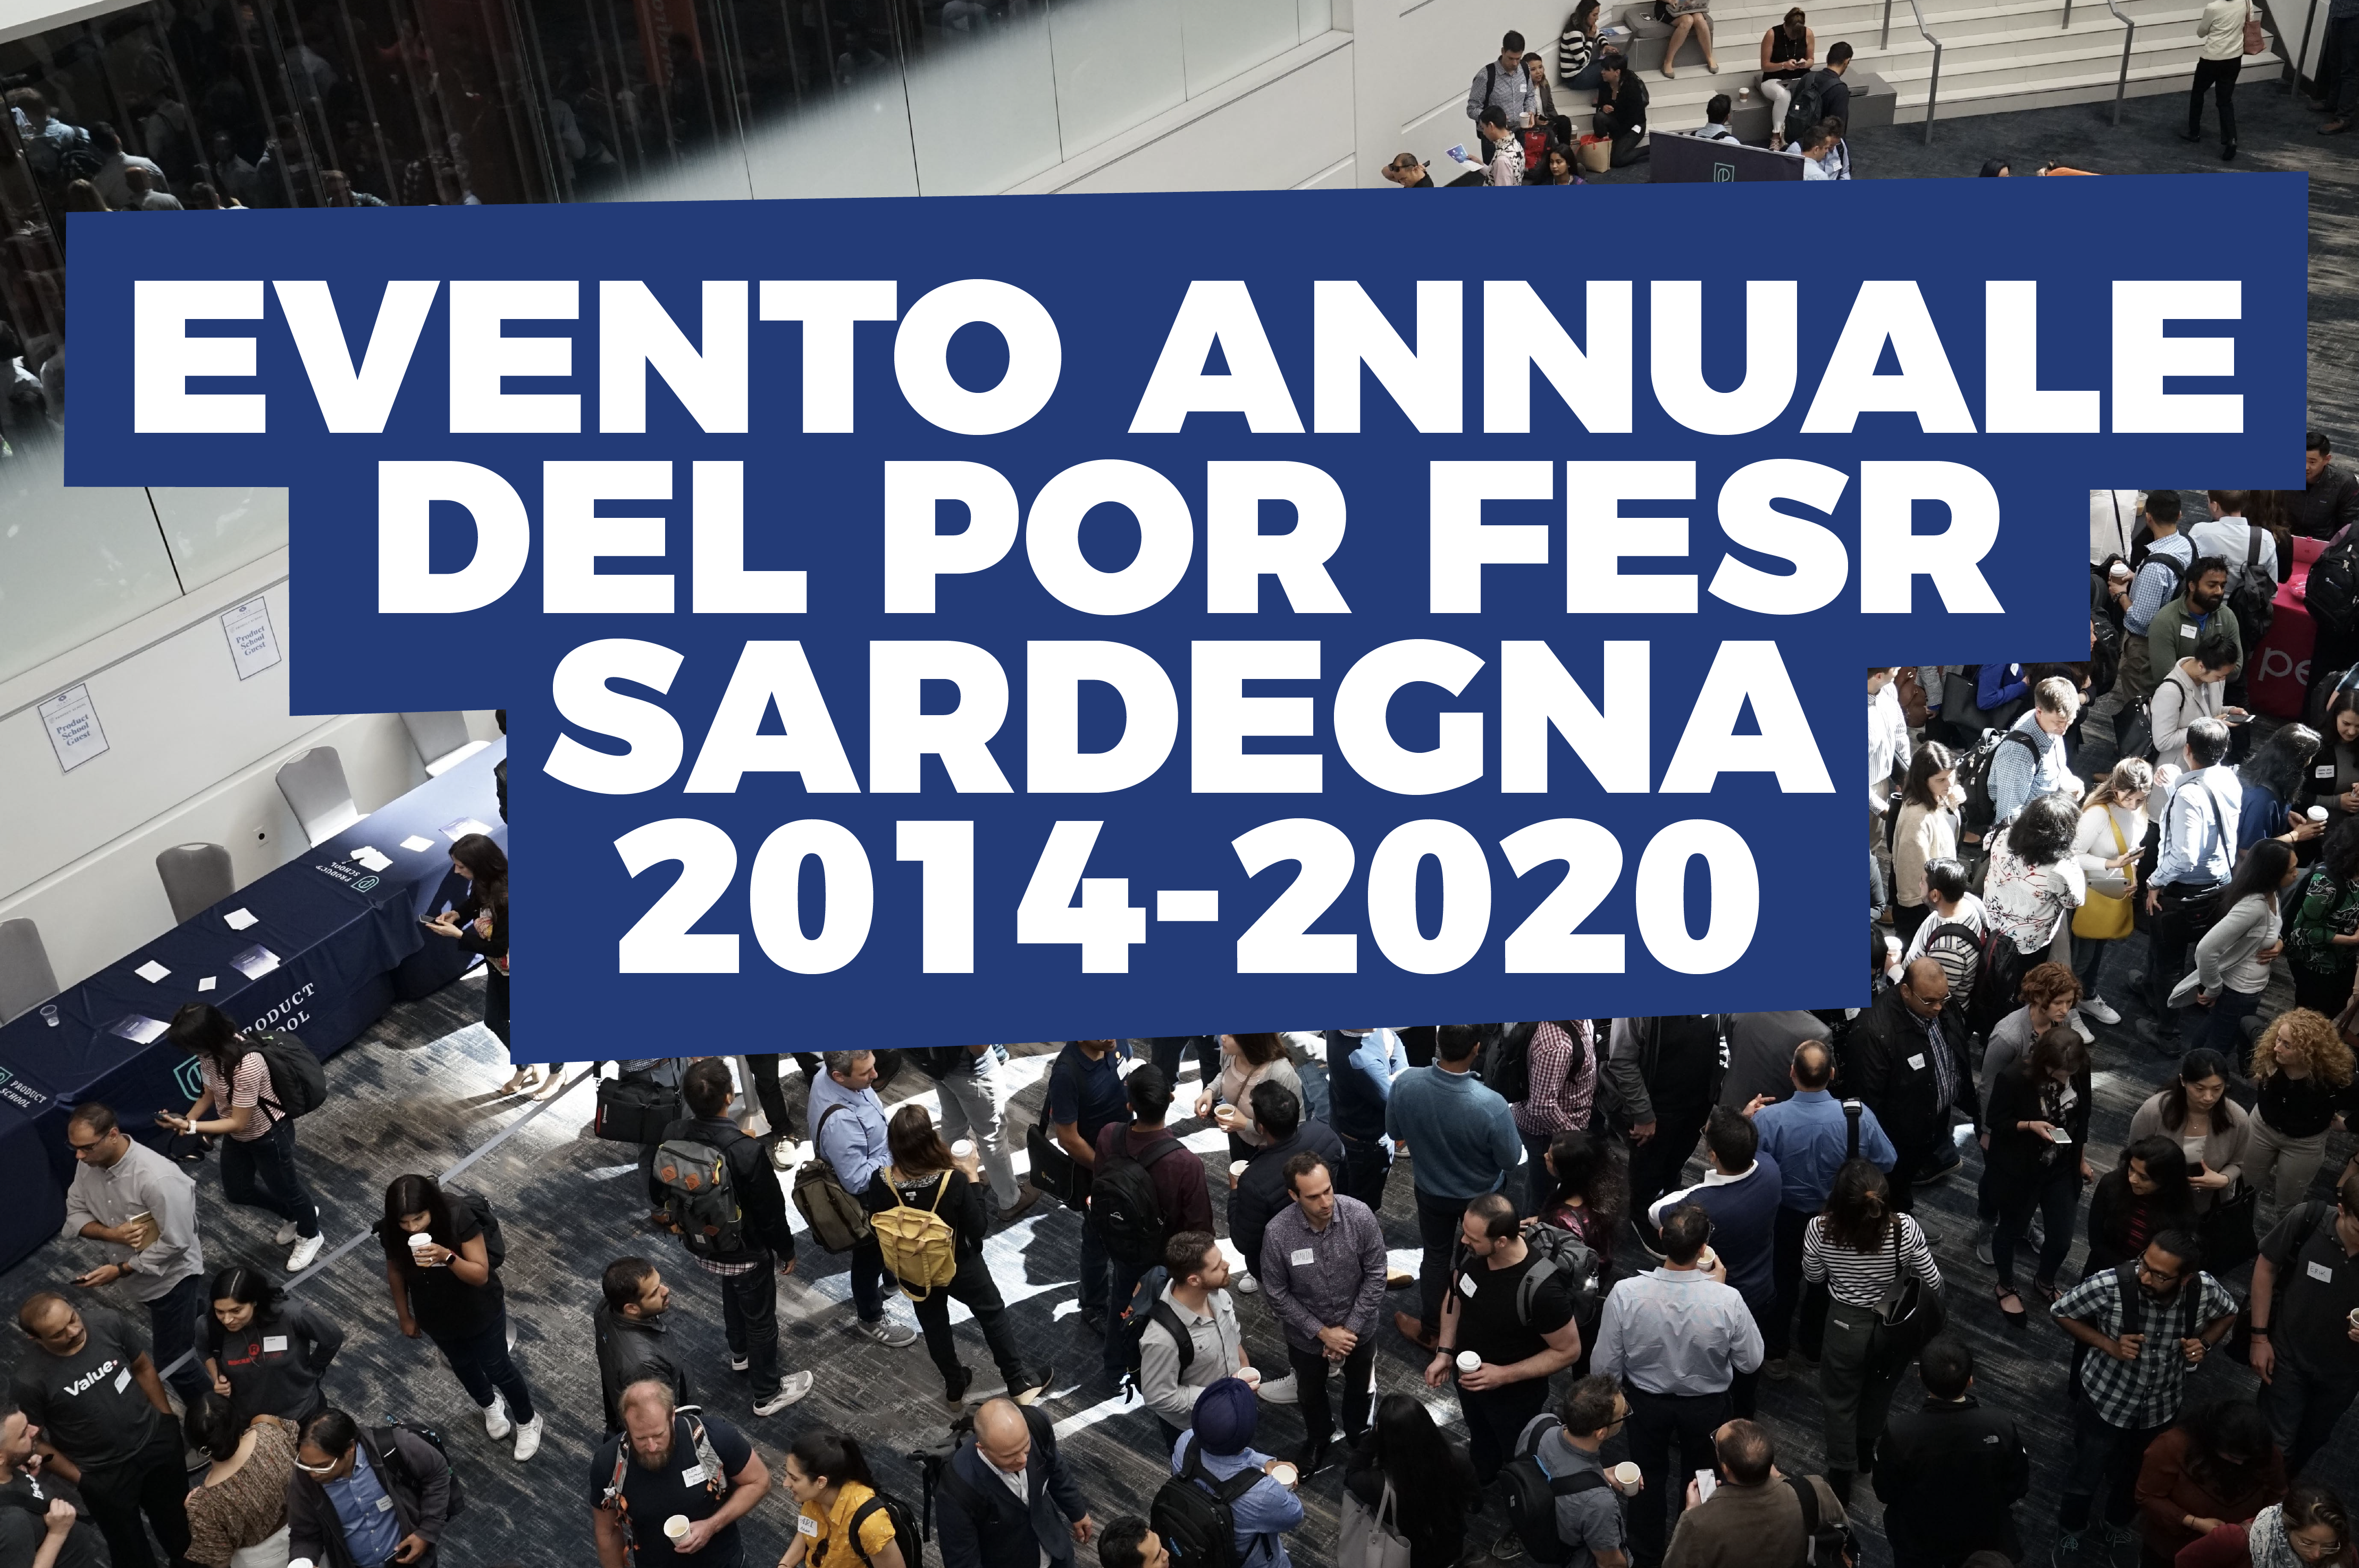 POR FESR Sardegna 2014-2020 - Evento annuale a Olbia 